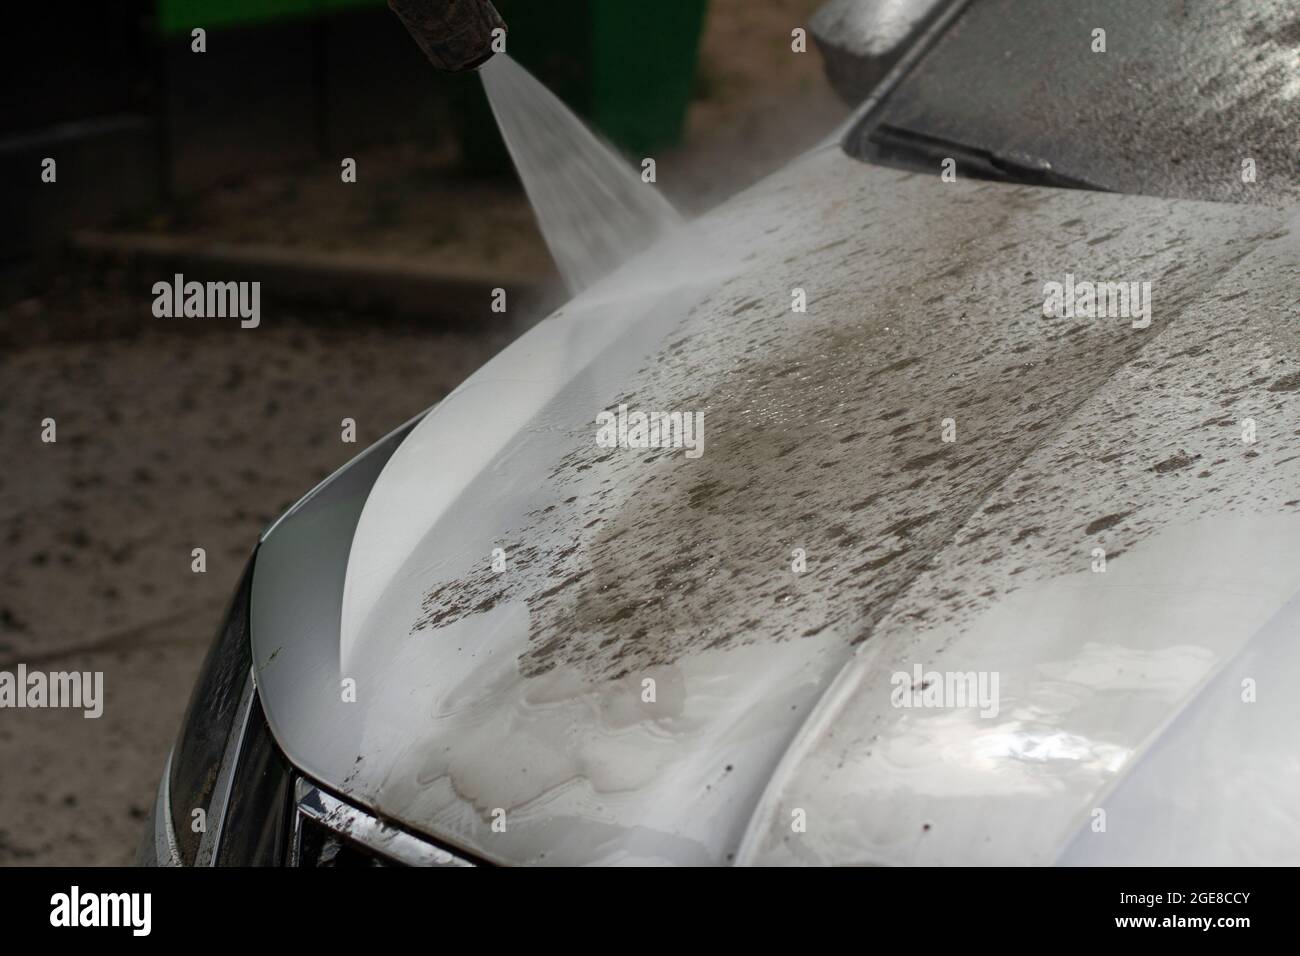 Autowäsche. Das Auto wird unter dem Druck eines Wasserstrahls gewaschen. Mit einem Wasserspray Schmutz von der Fahrzeugoberfläche abwaschen. Stockfoto